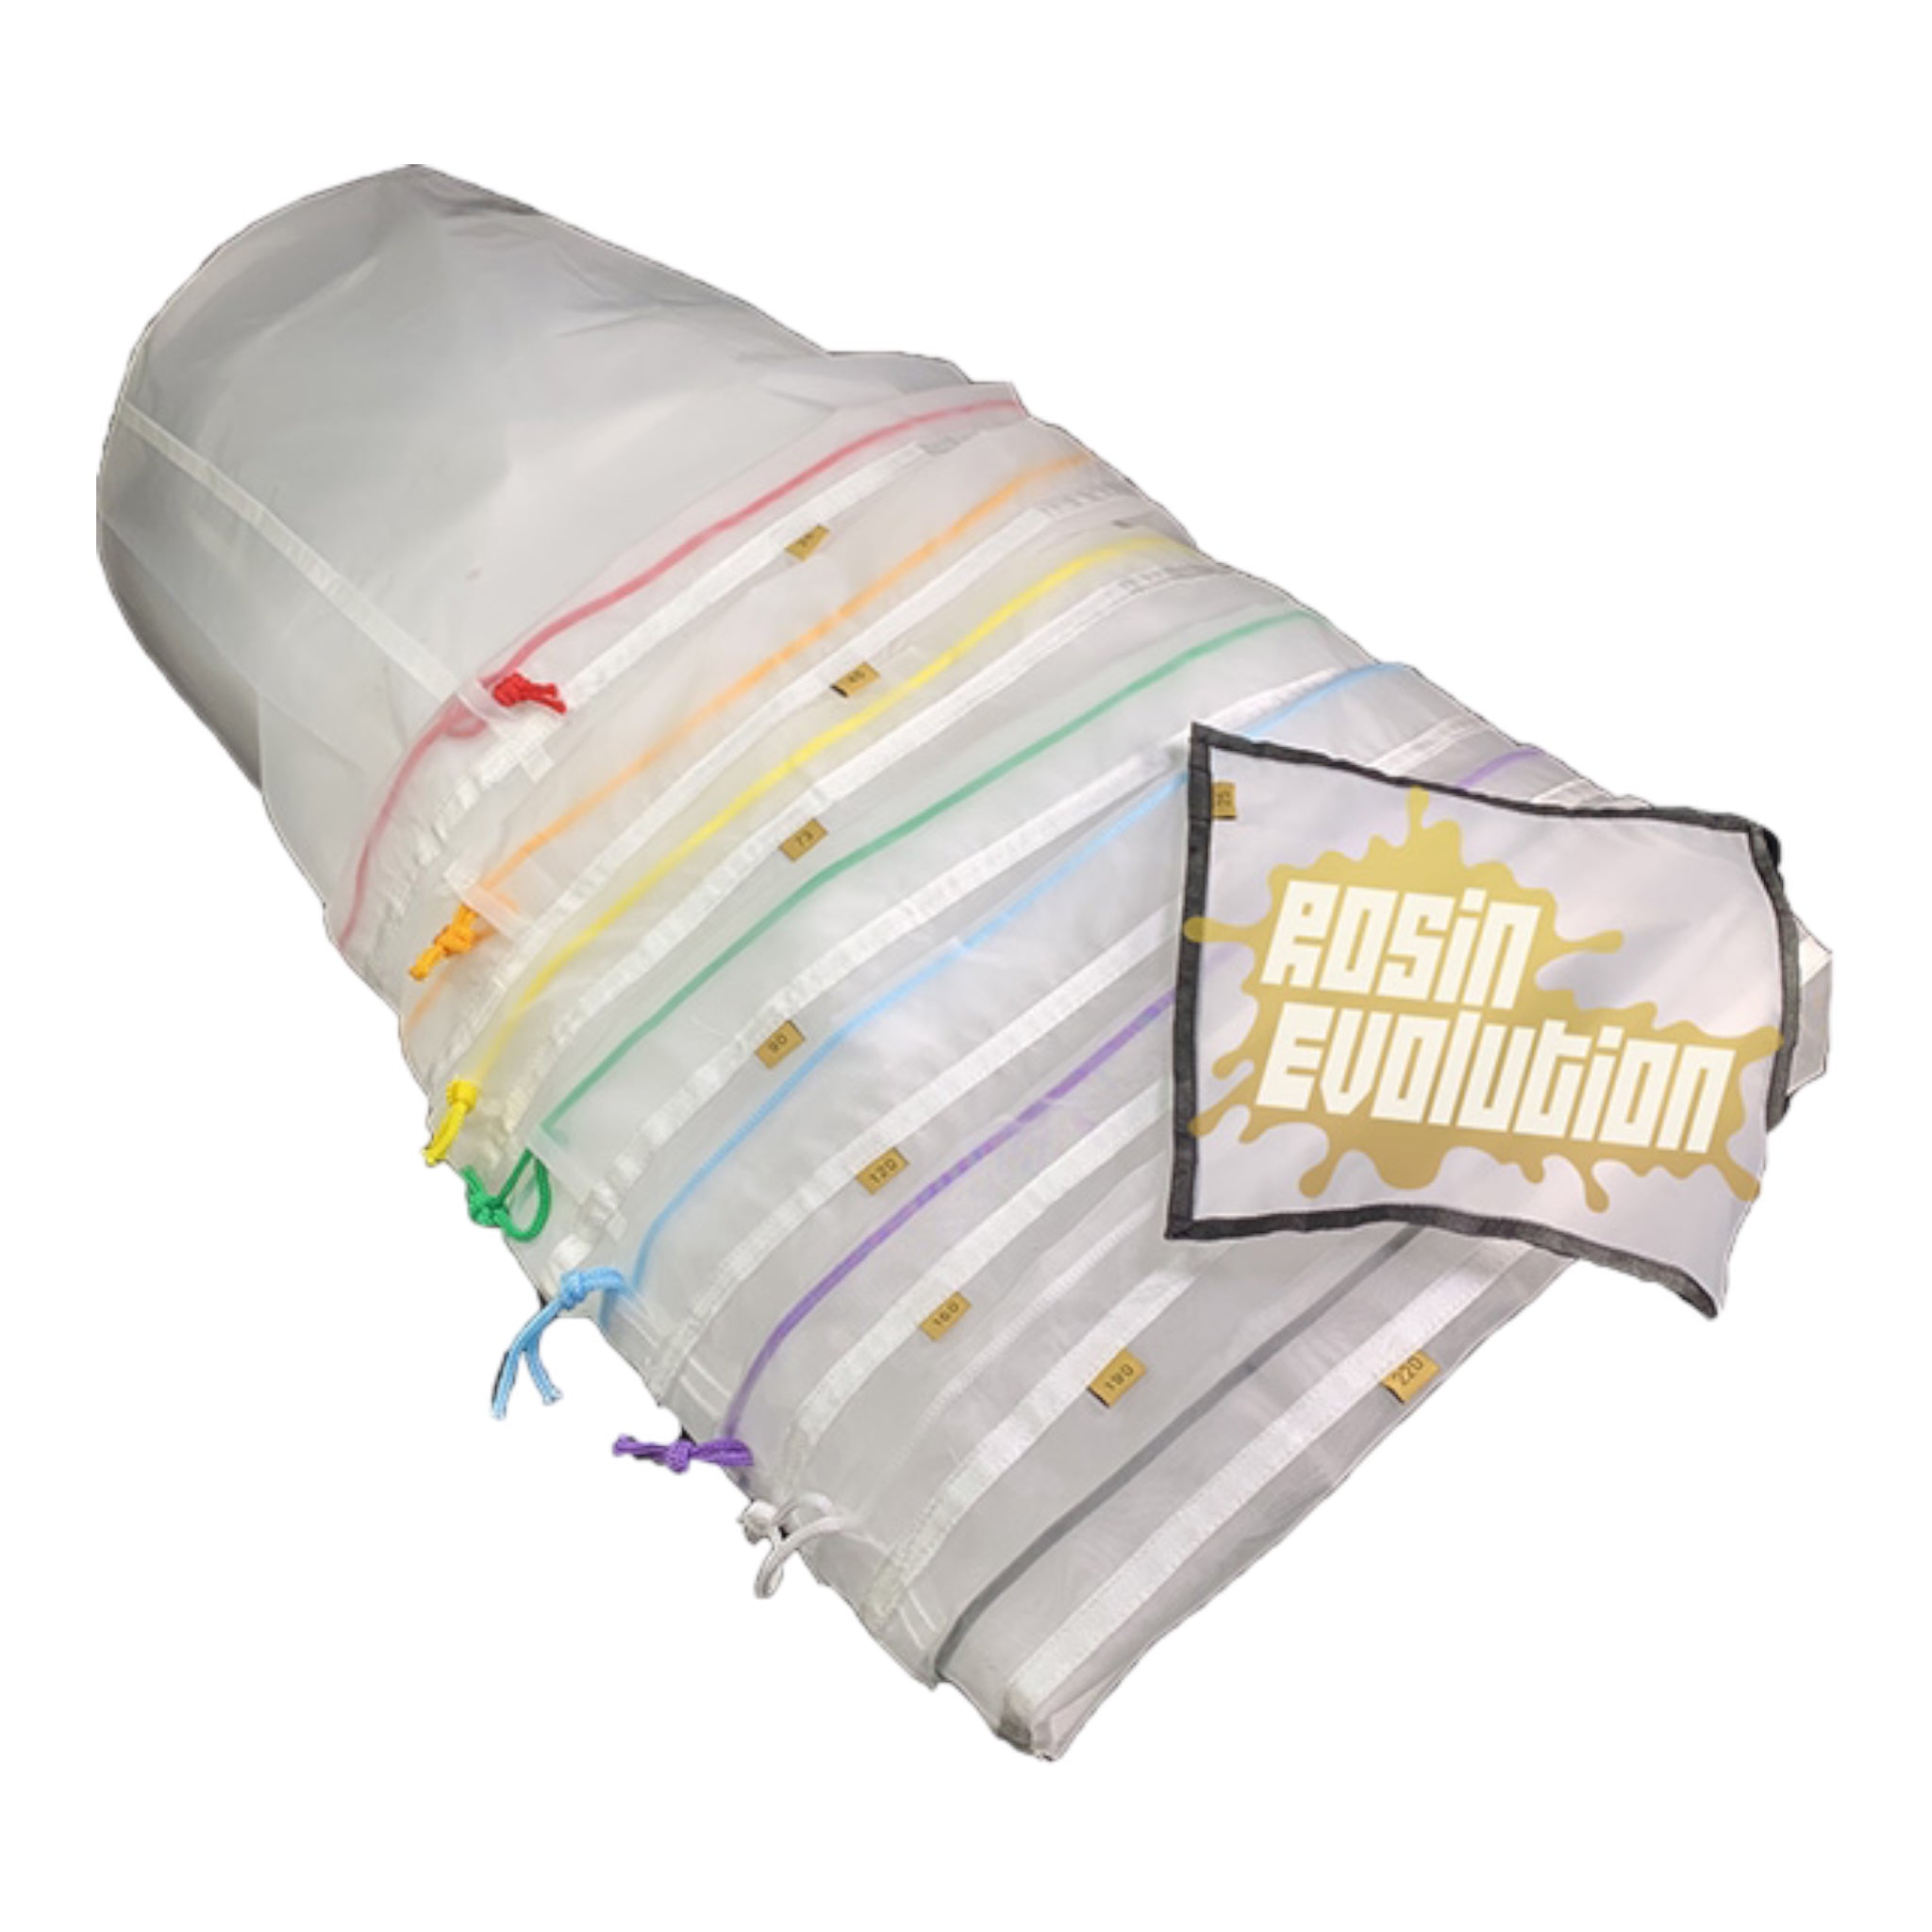 Rosin Evolution Wash Bags 5 gallon and 20 gallon